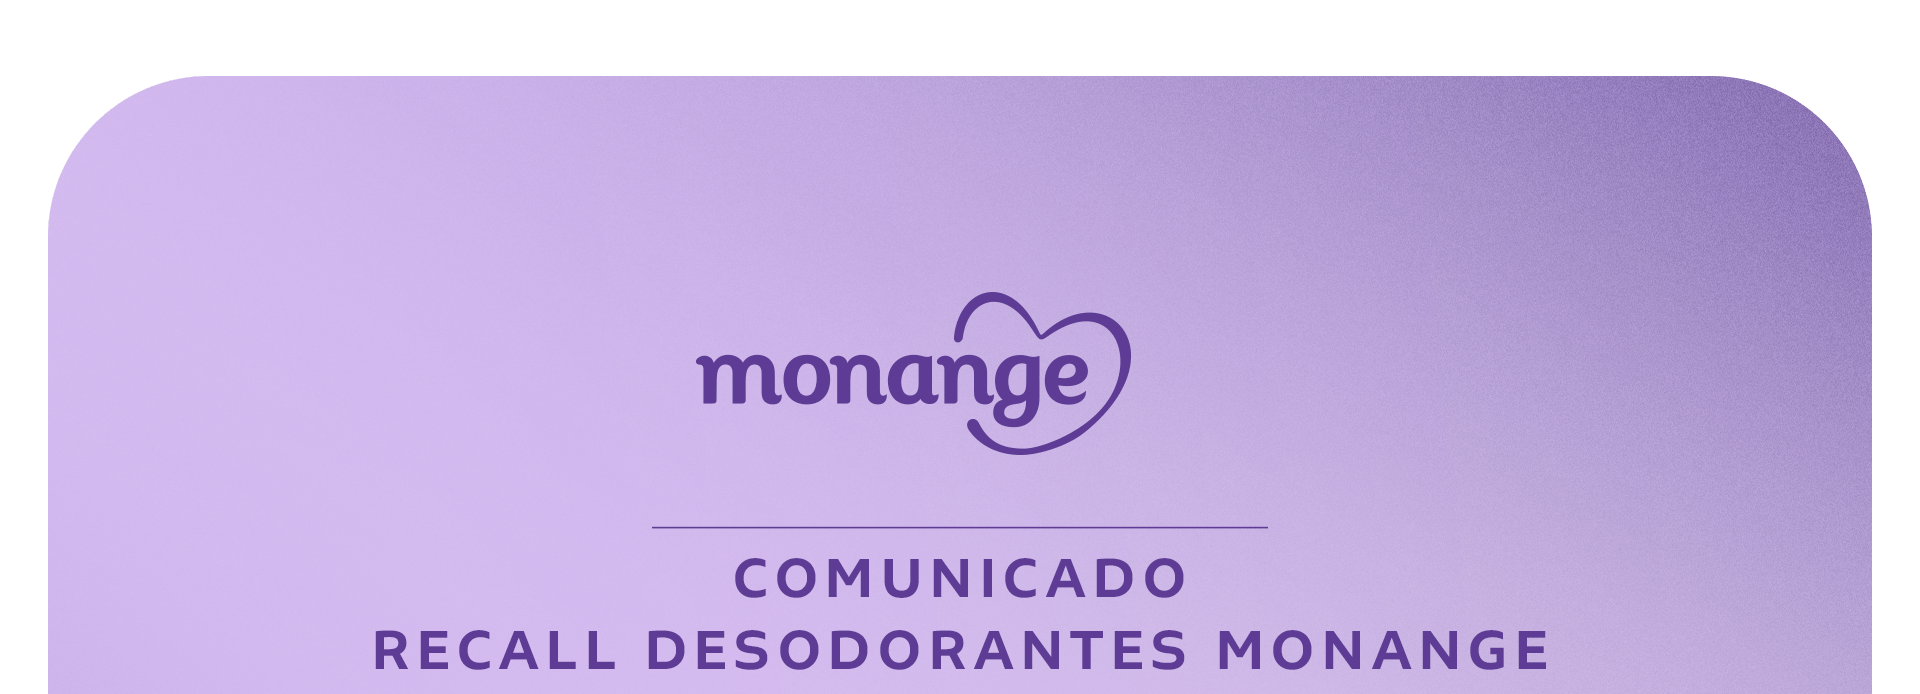 Monange - Comunicado Recall